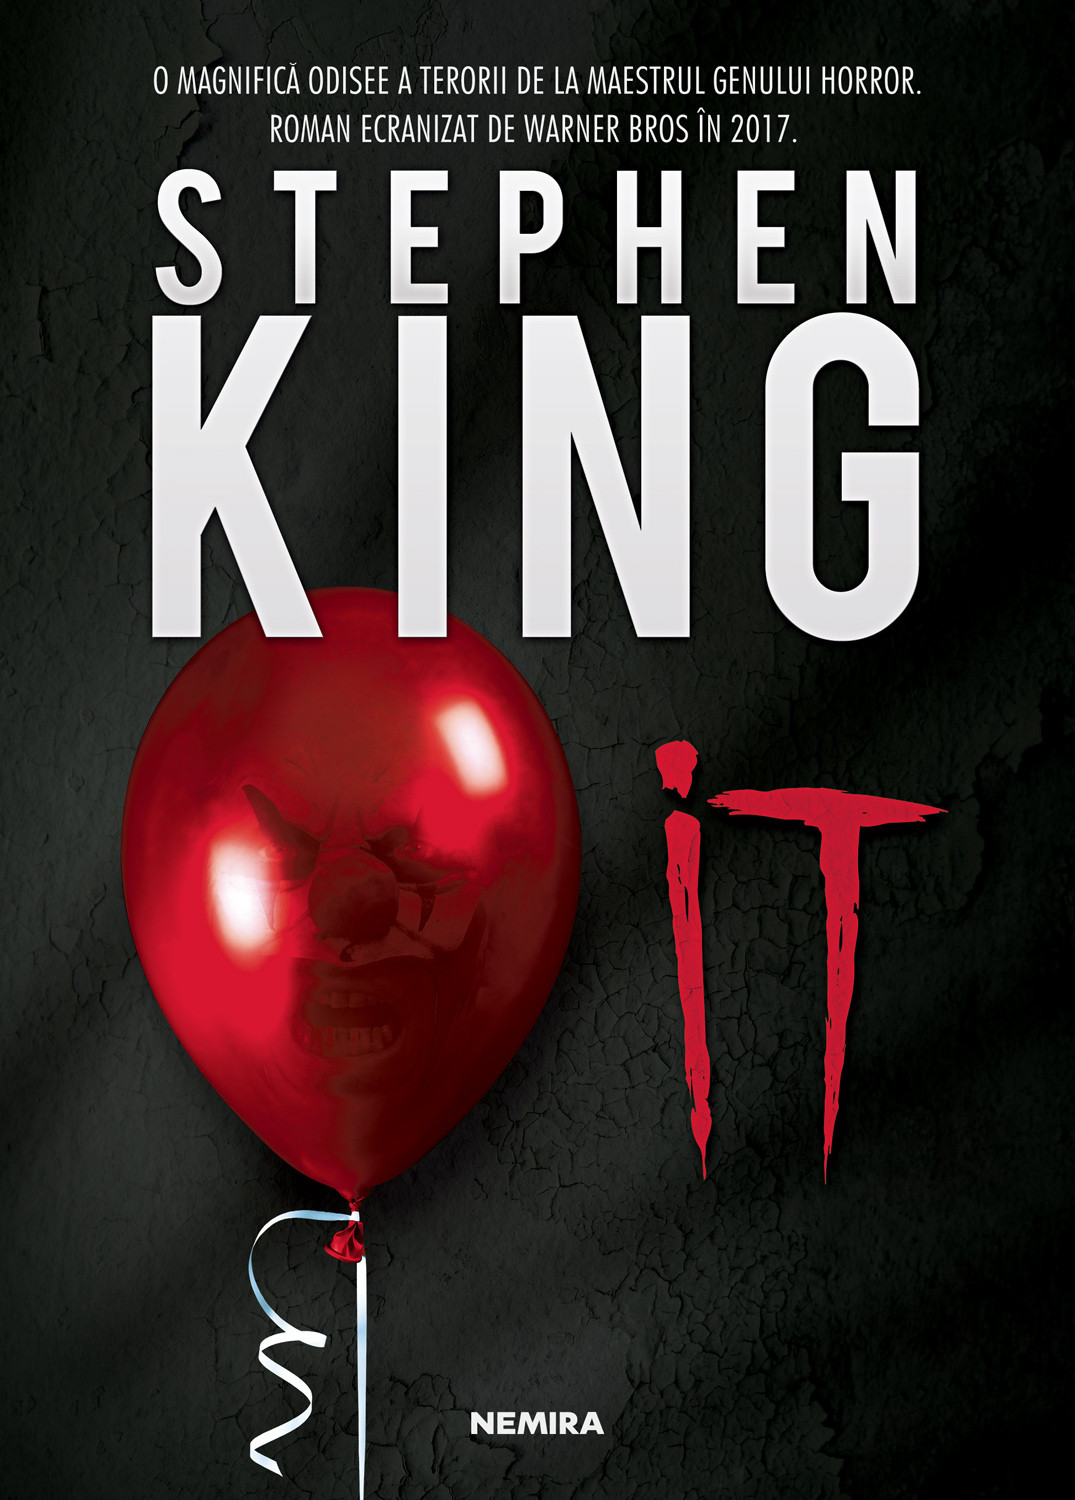 IT - Stephen King